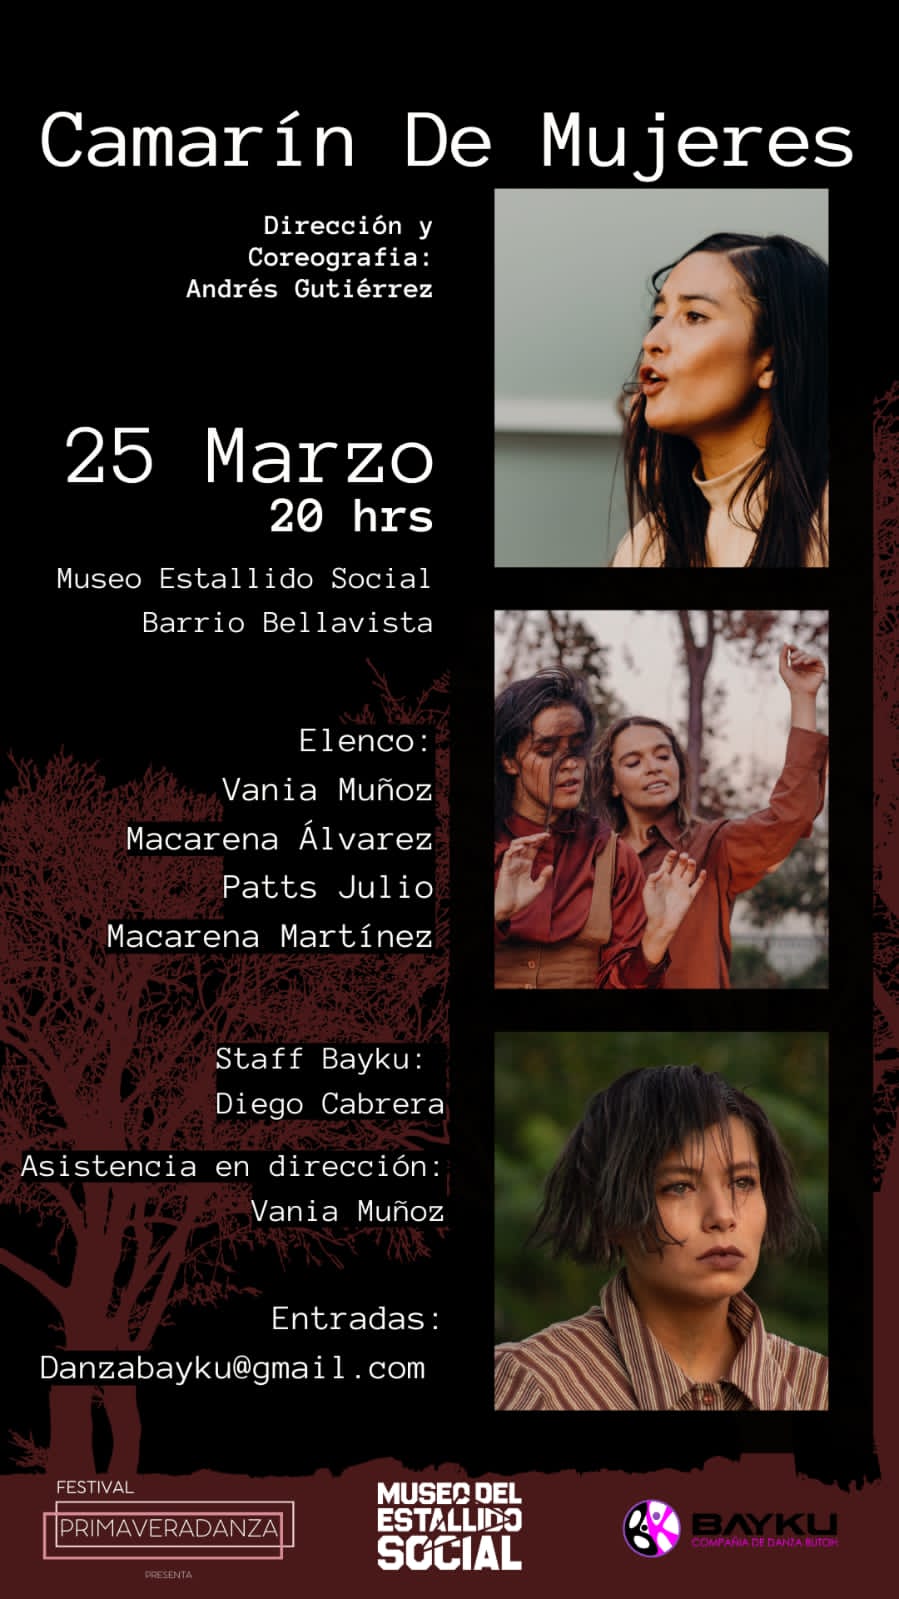 Camarín de mujeres se presenta este sábado: Teatro, danza y canto para relatar una historia de mujeres torturadas en dictadura